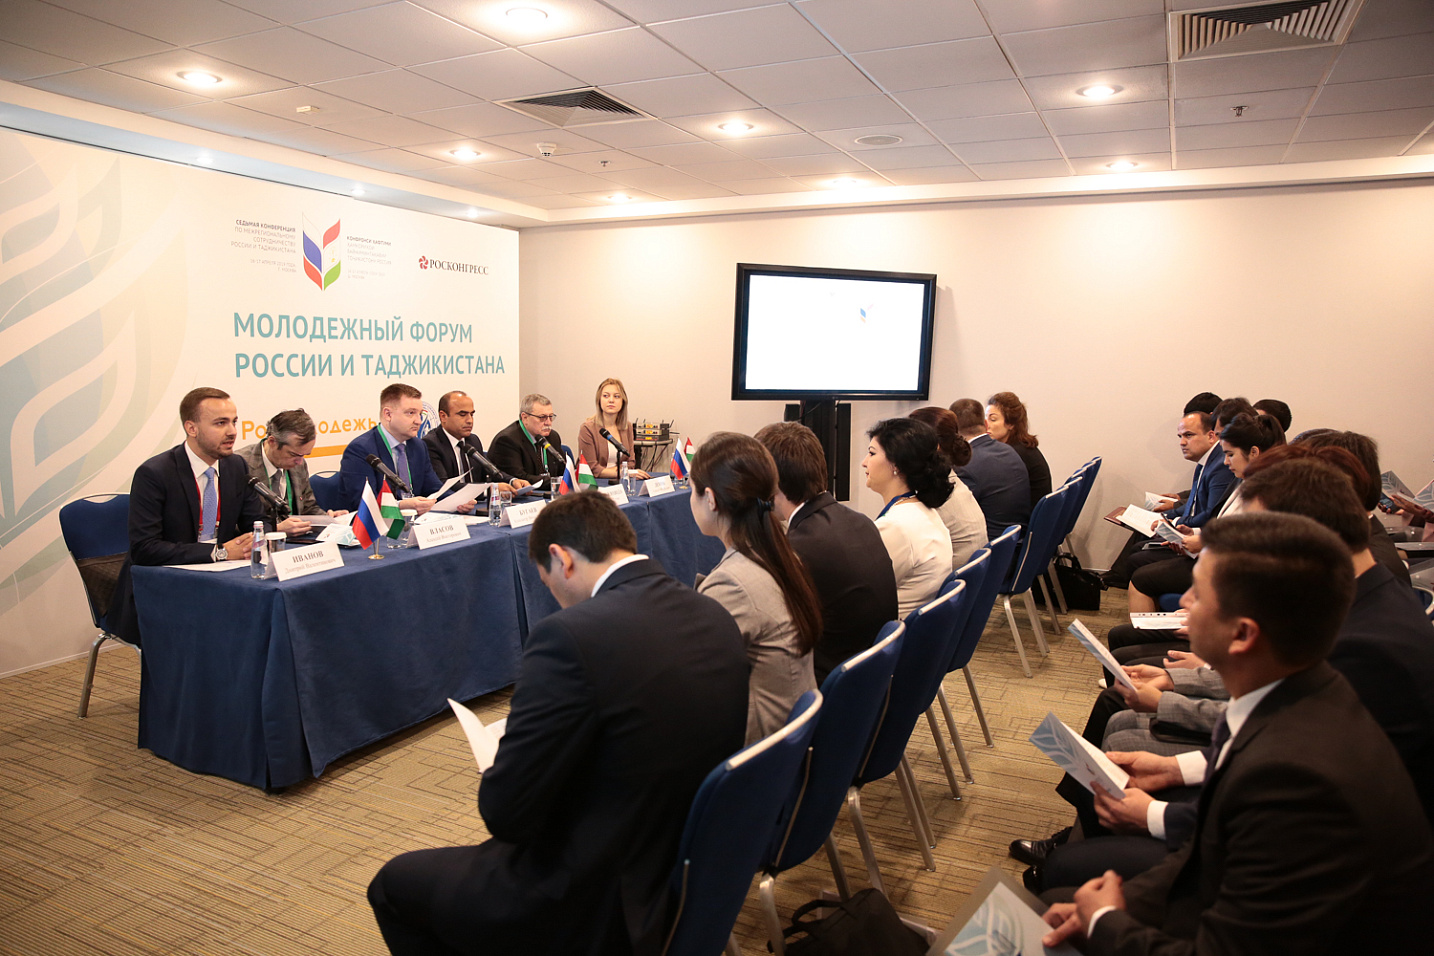 Завершился первый день Седьмой конференции по межрегиональному сотрудничеству России и Таджикистана